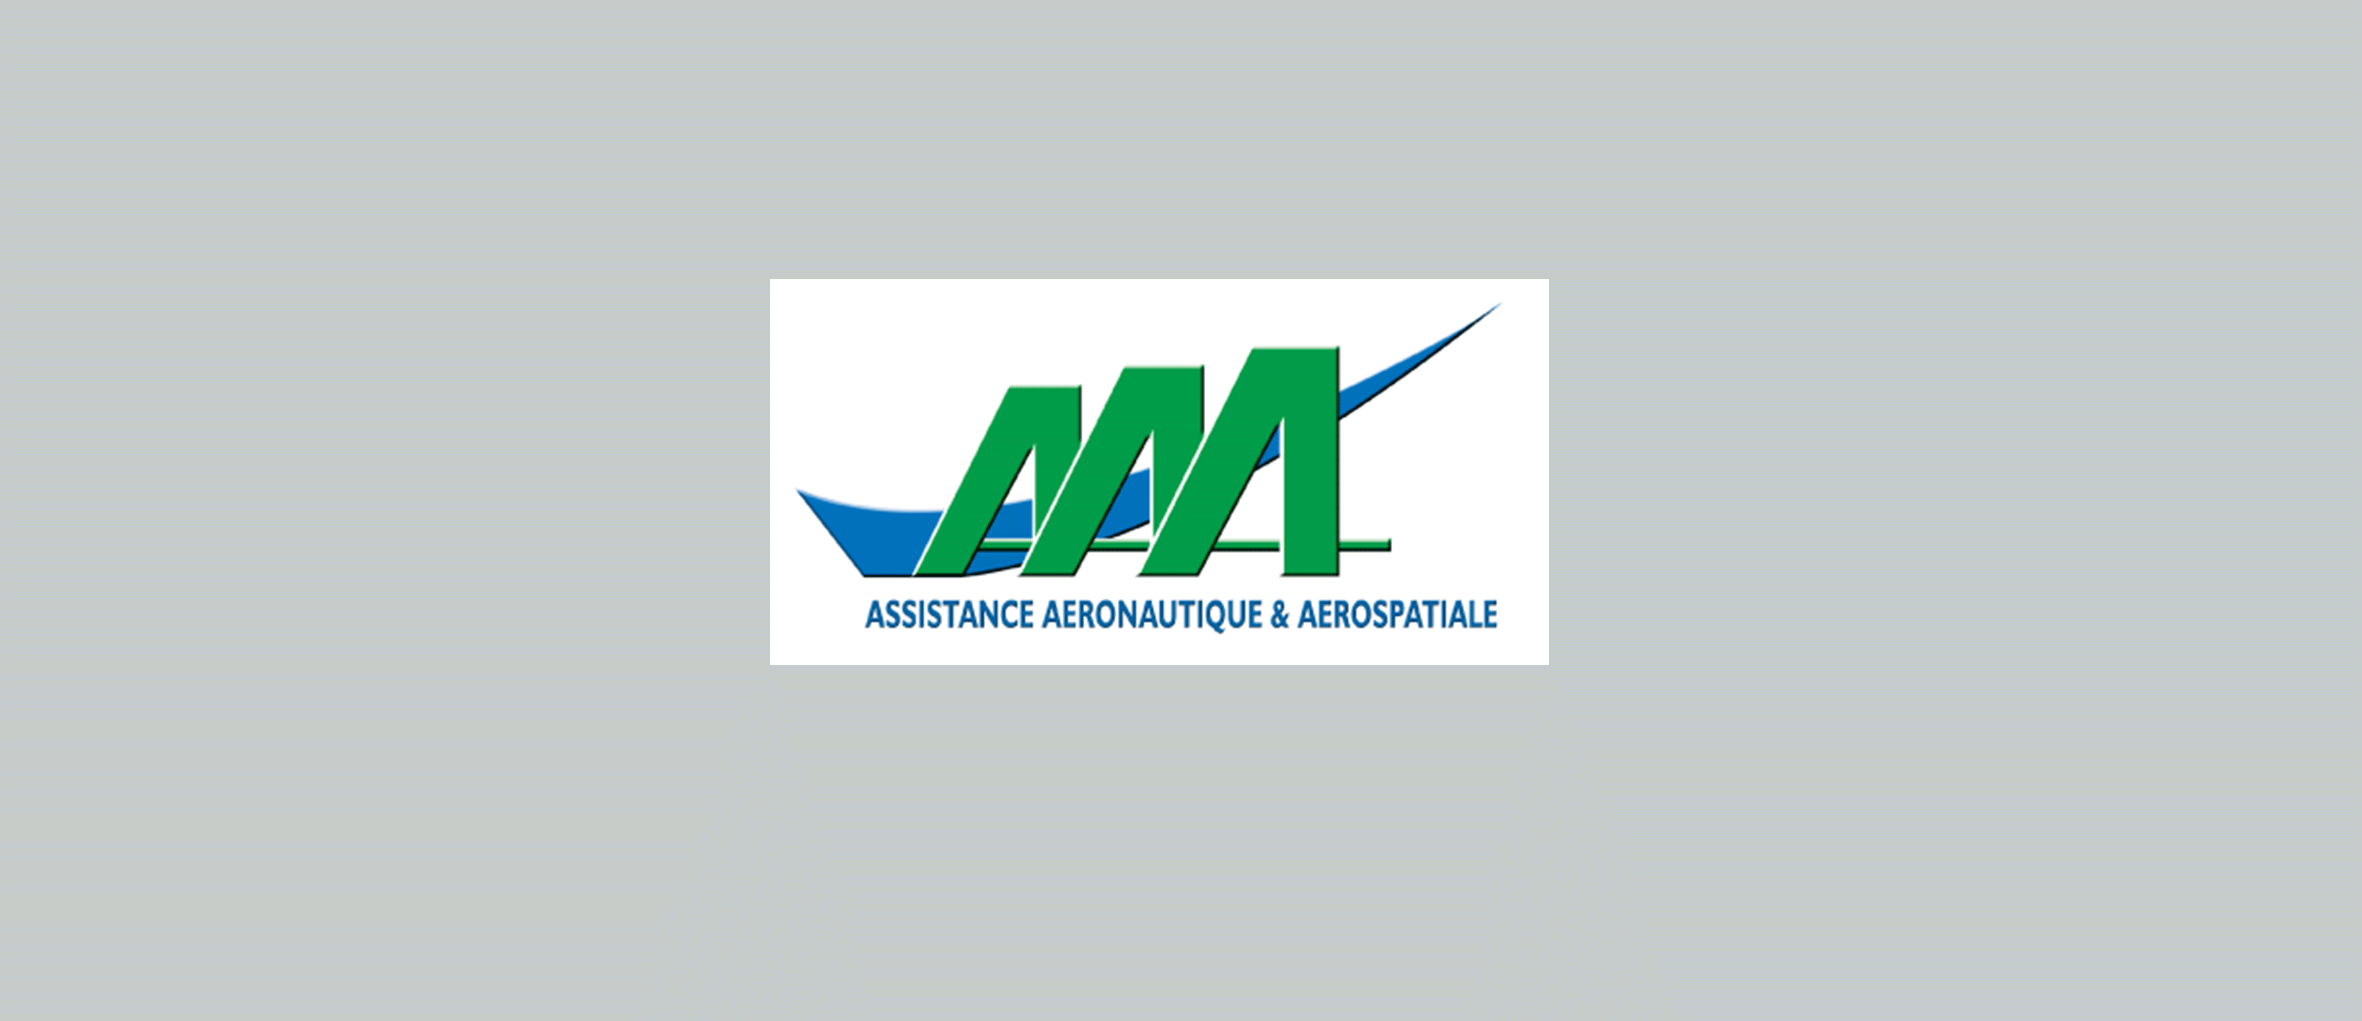 Logo de la société aéronautique AAA